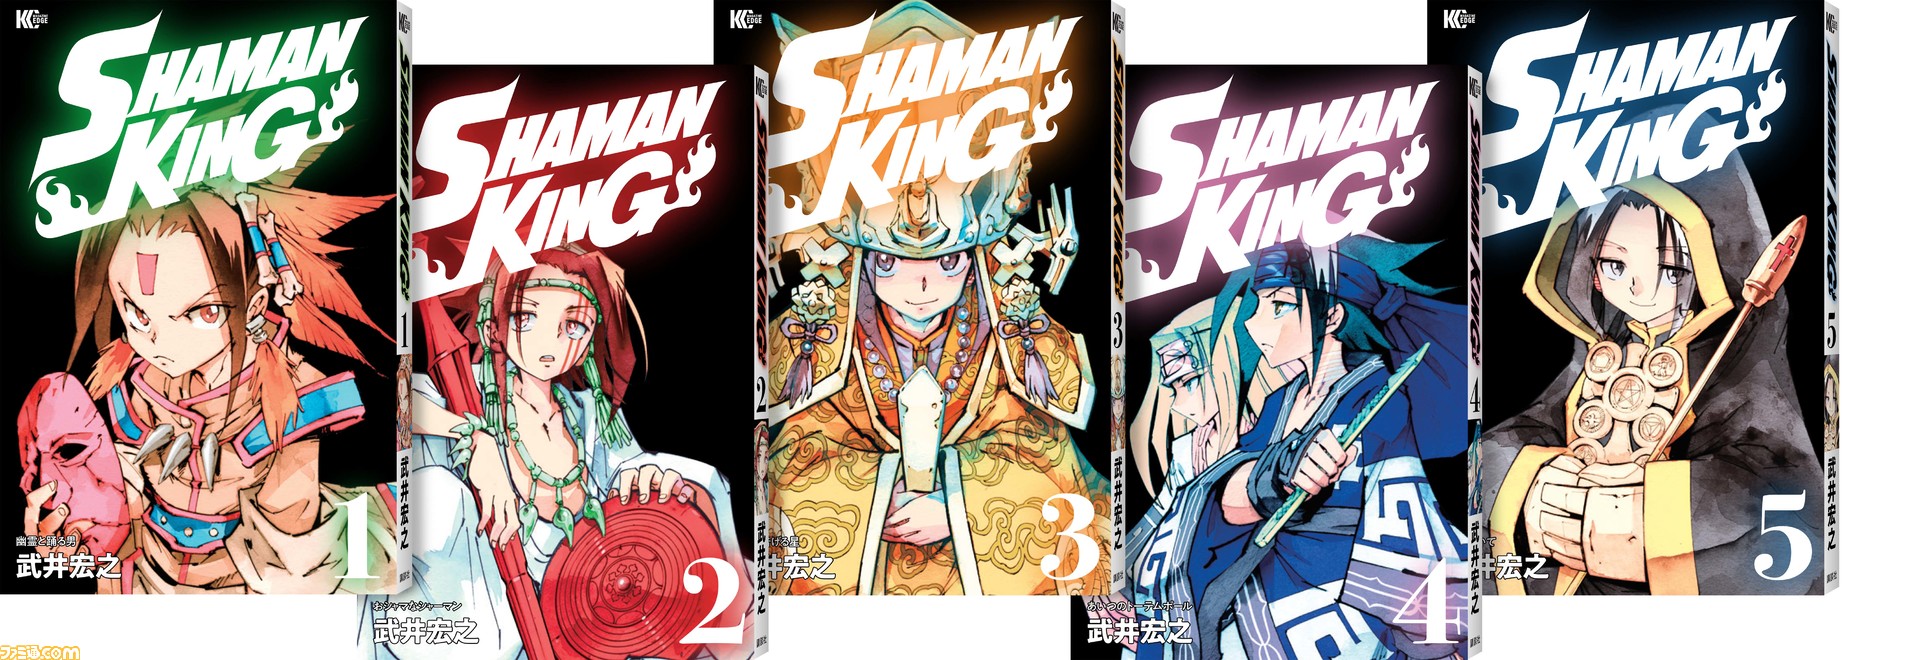 マンガ シャーマンキング 全35巻が6月17日より刊行開始 新旧イラストのダブルカバー仕様 ファミ通 Com